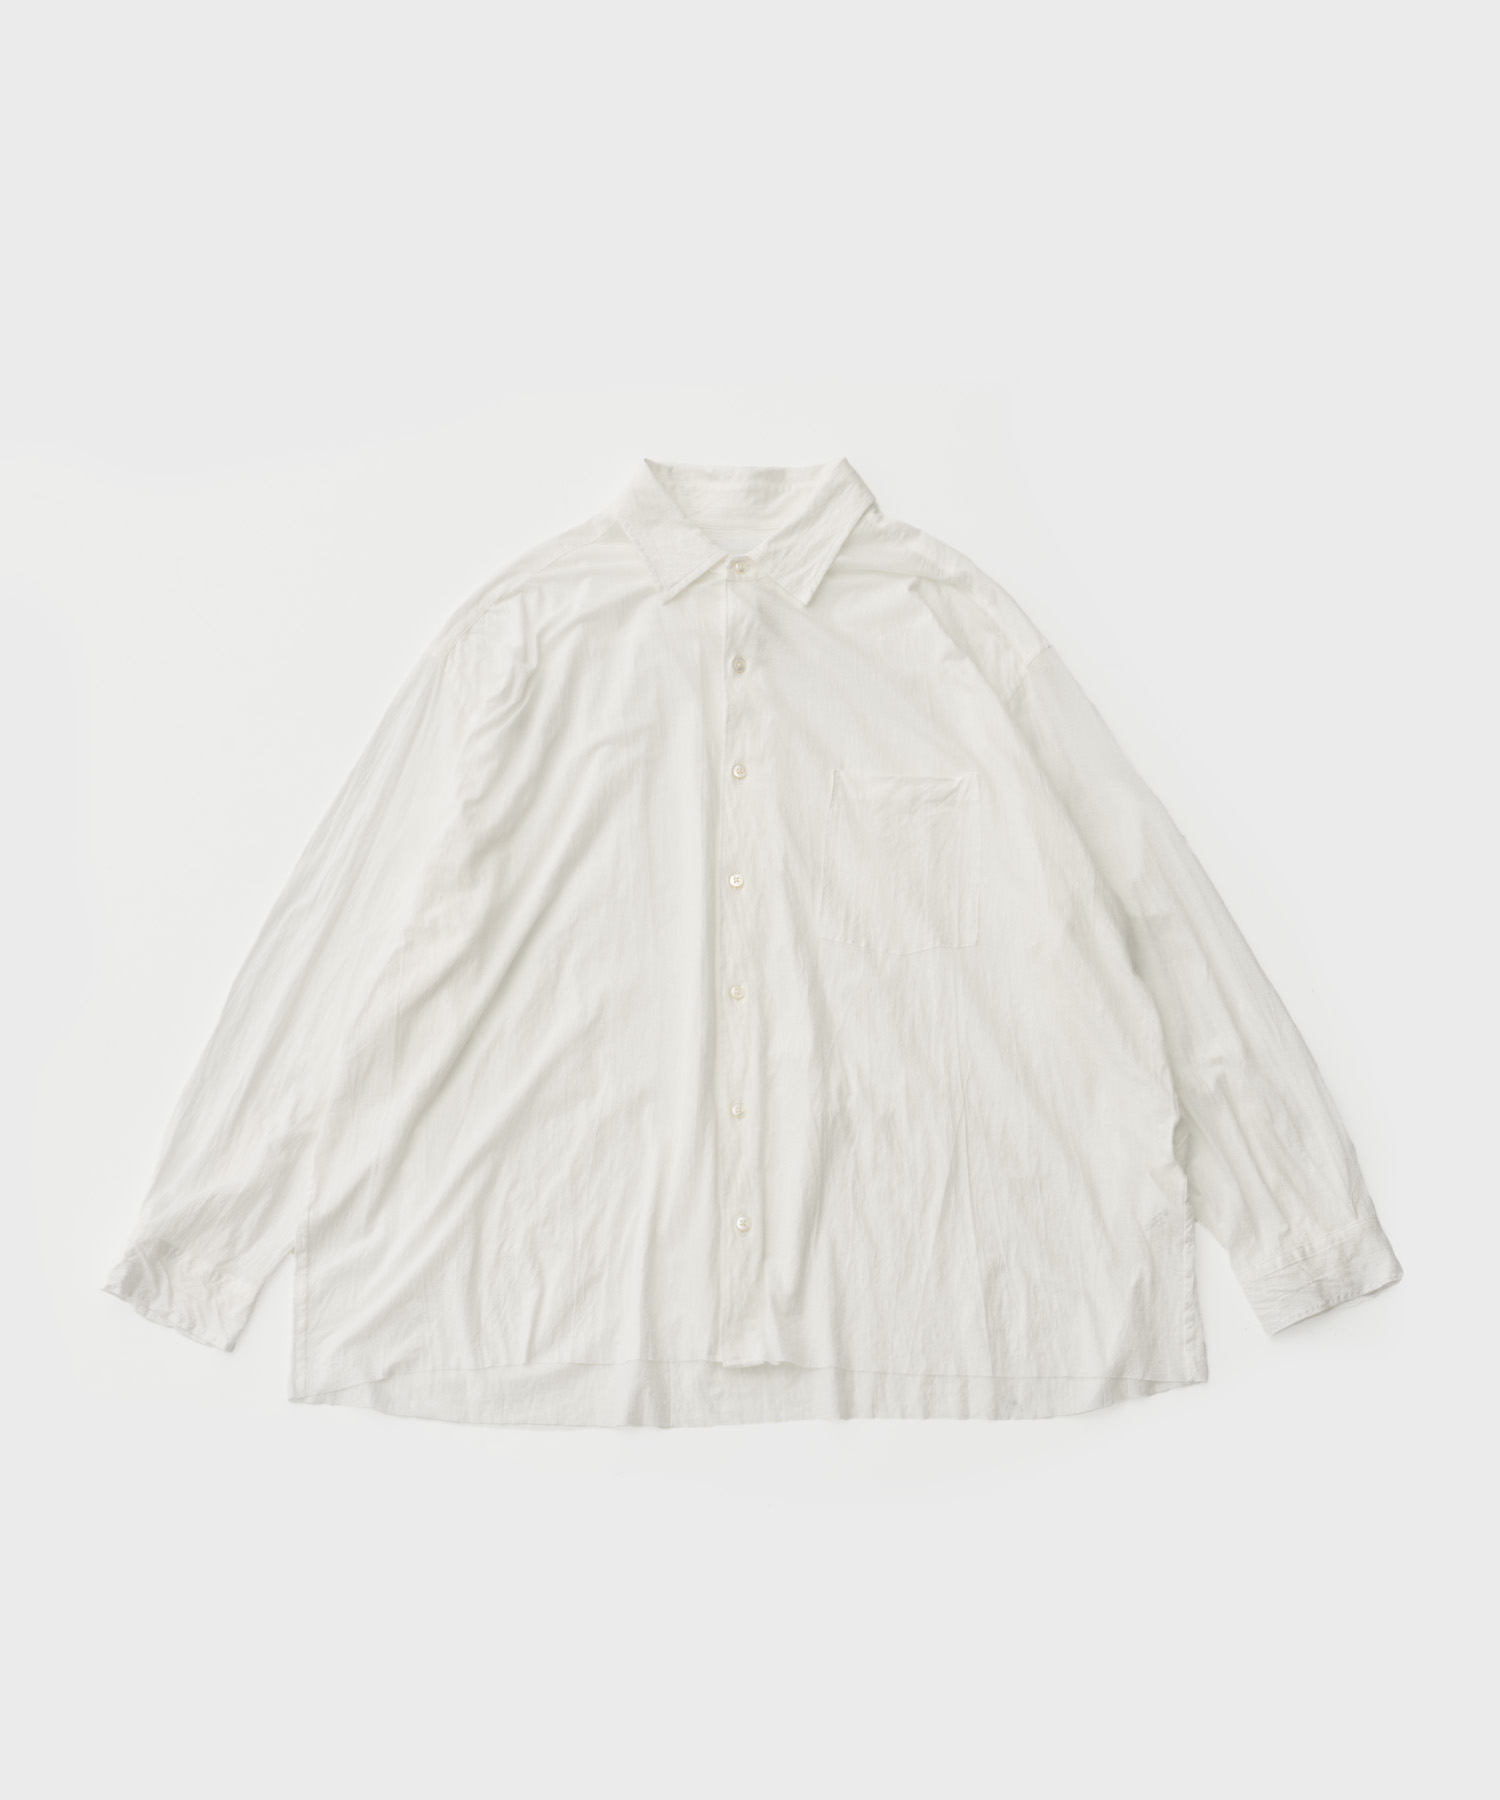 46G Artisan Crepe Jersey Shirt (White)